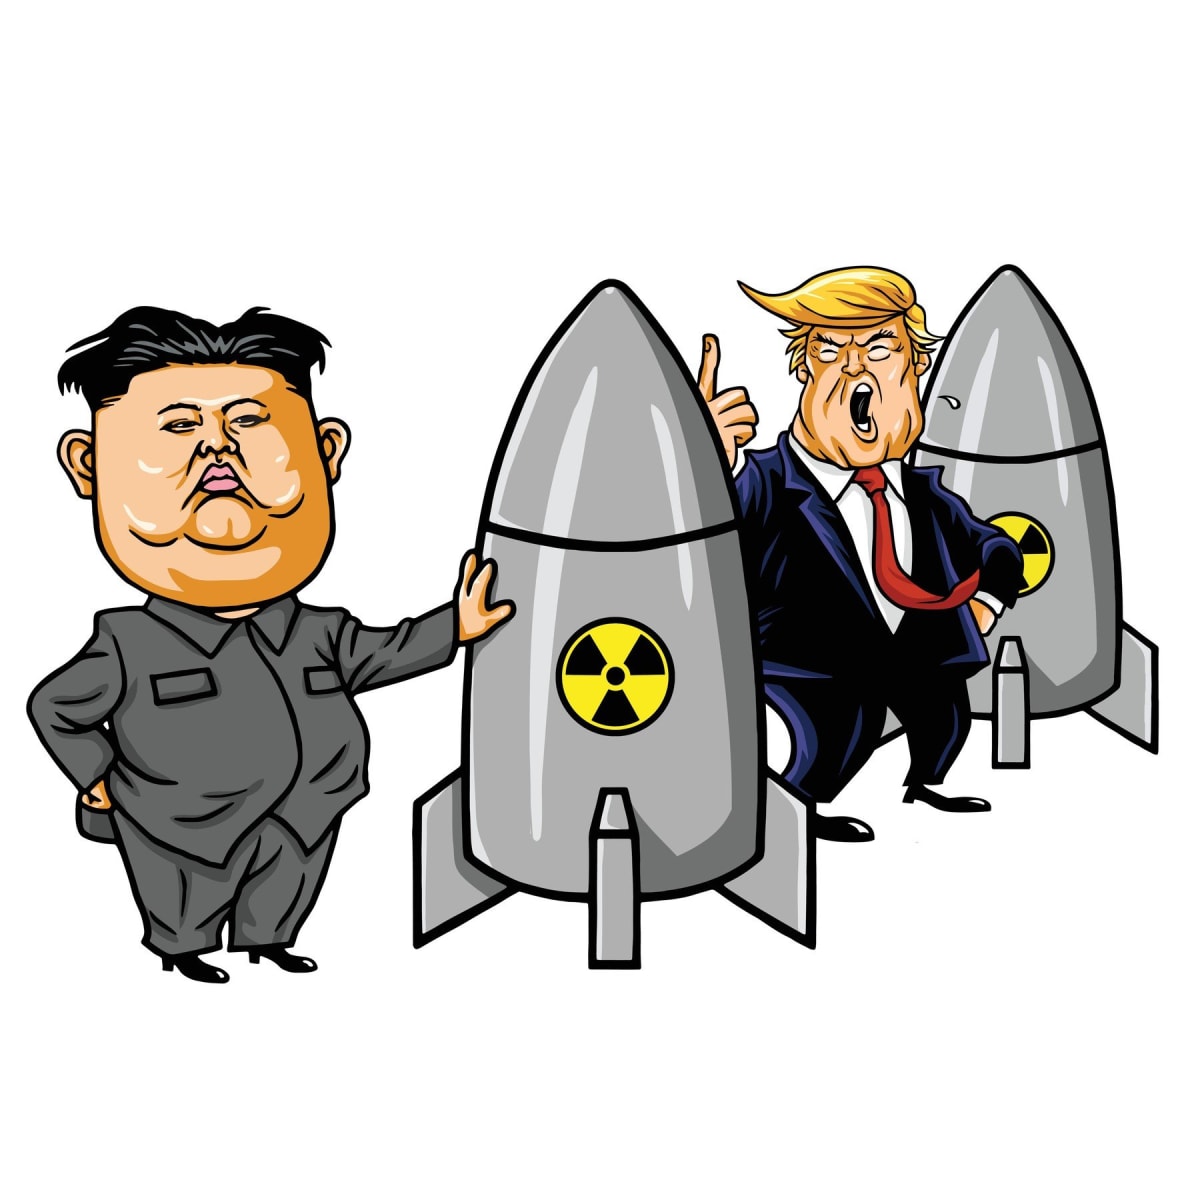 Donald Trump vs. Kim Čong-un